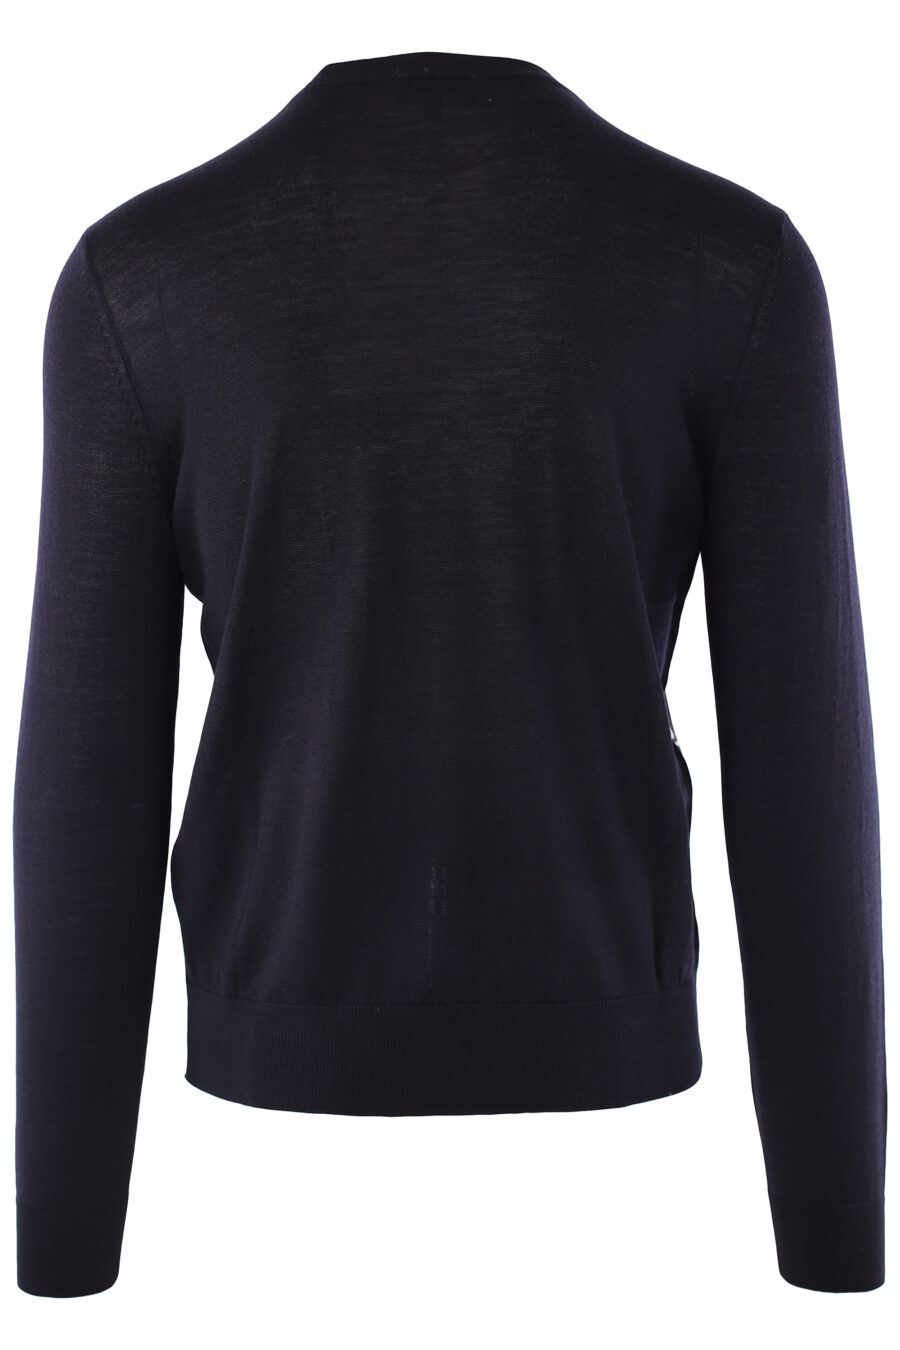 Jersey azul oscuro con logo en mangas laterales - IMG 6501